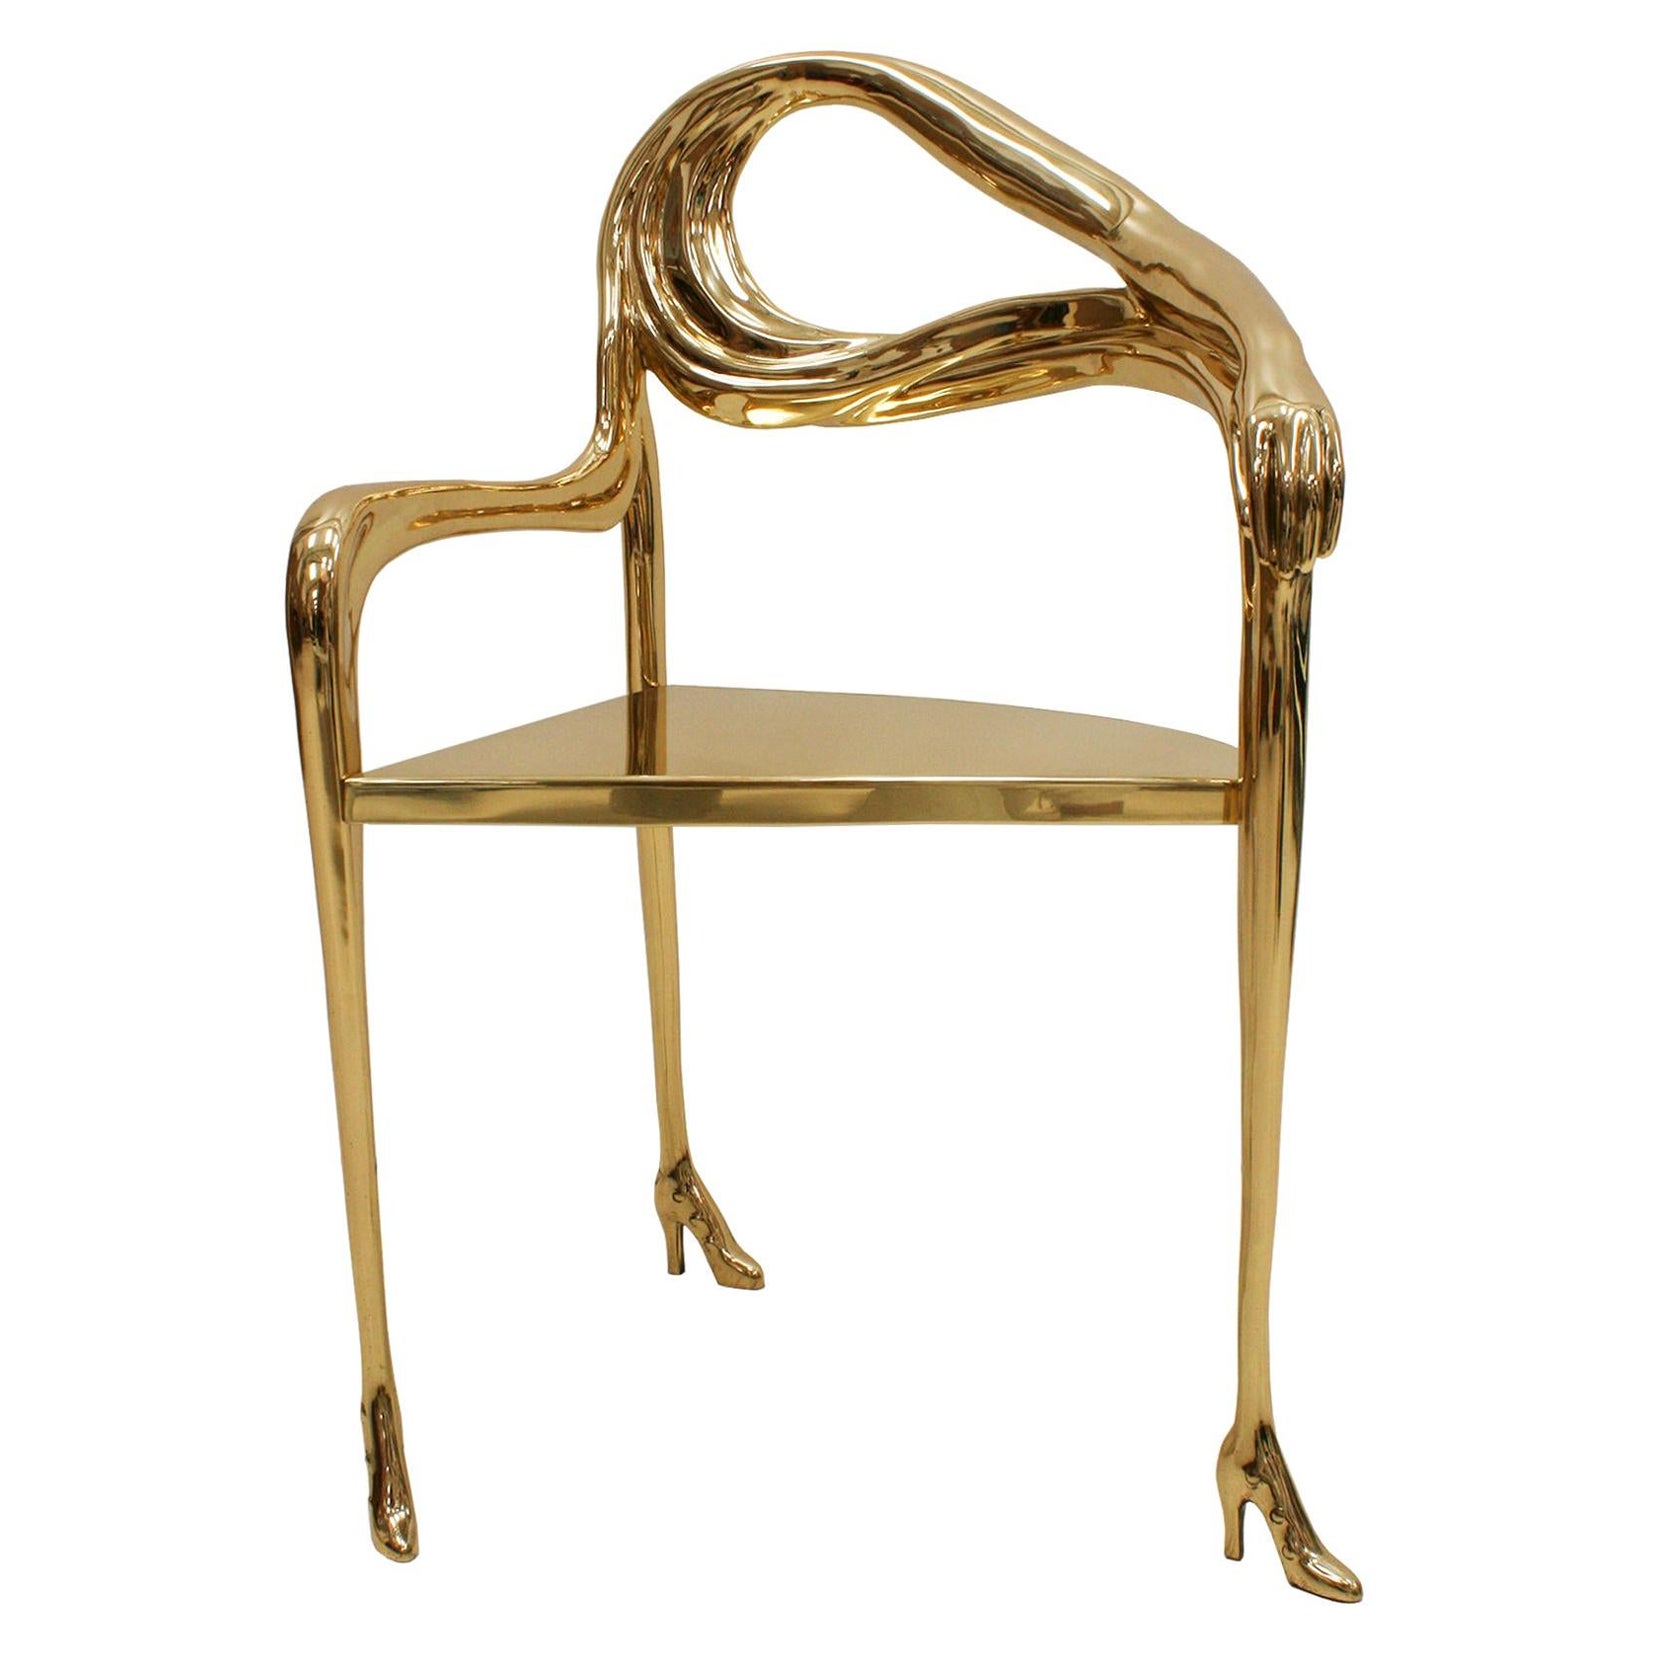 Salvador Dalí "Leda" Sculptural Chair from “Femme à tête de roses” Painting